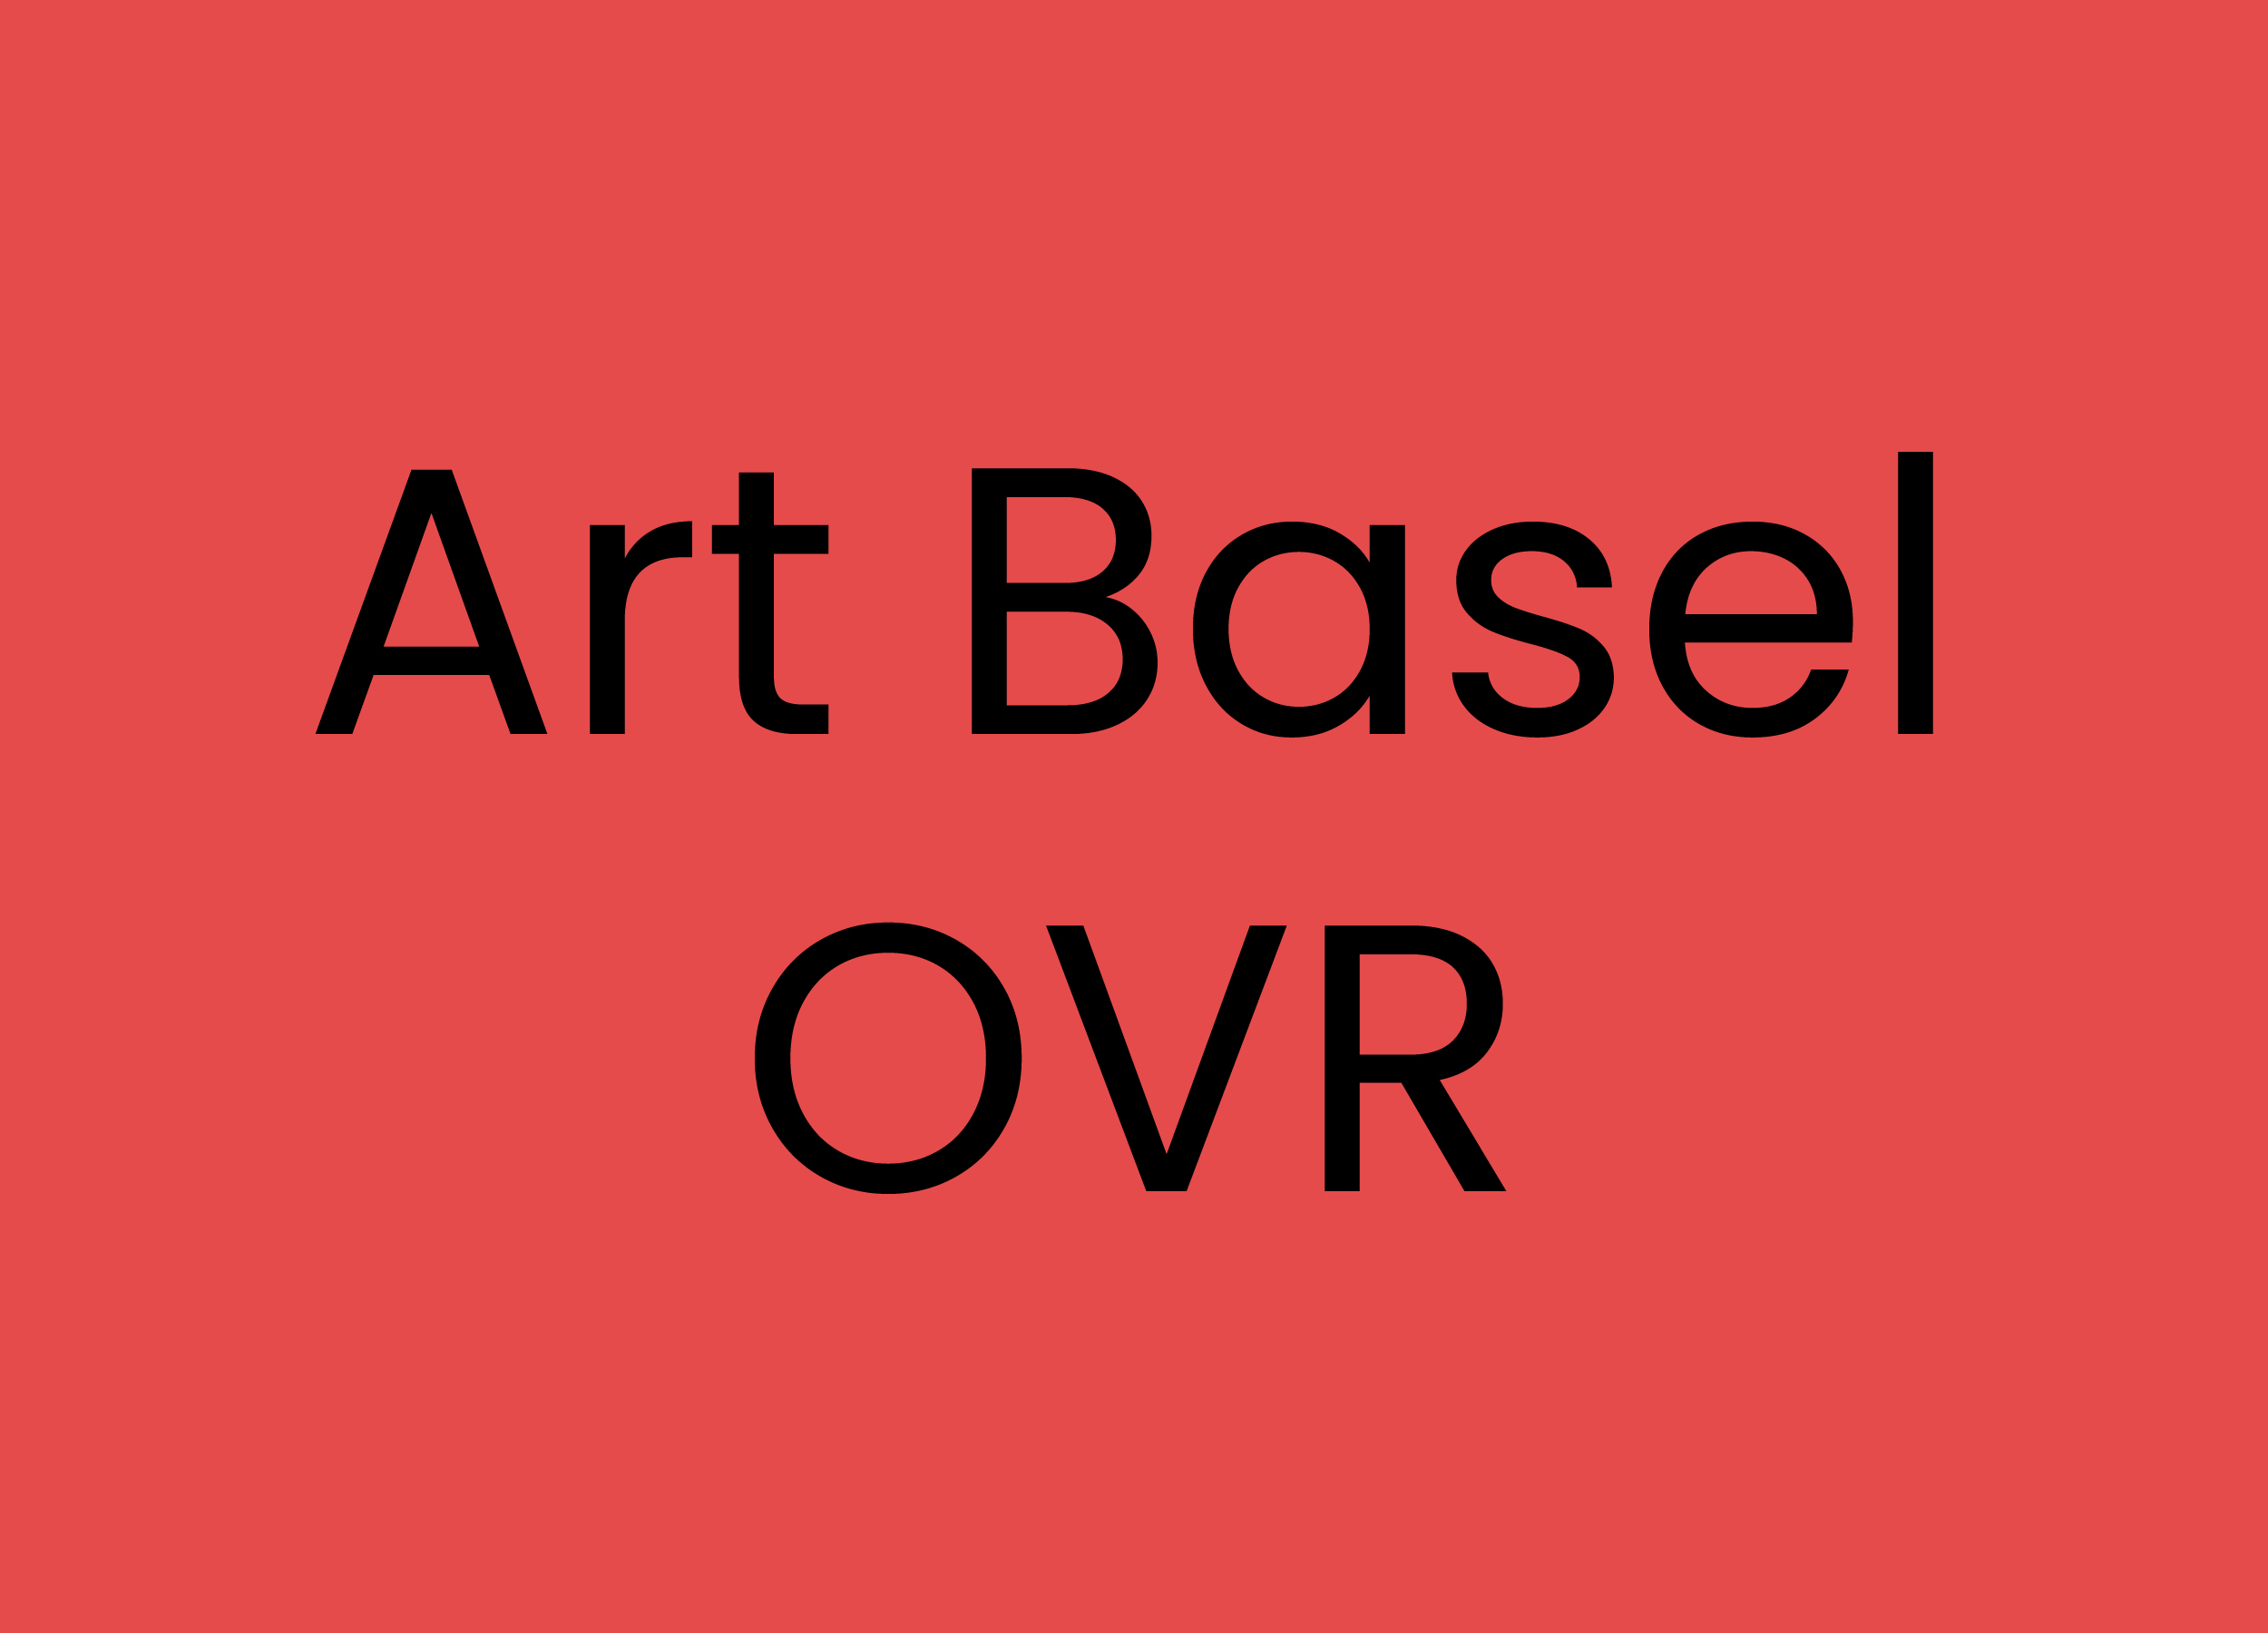 Art Basel OVR